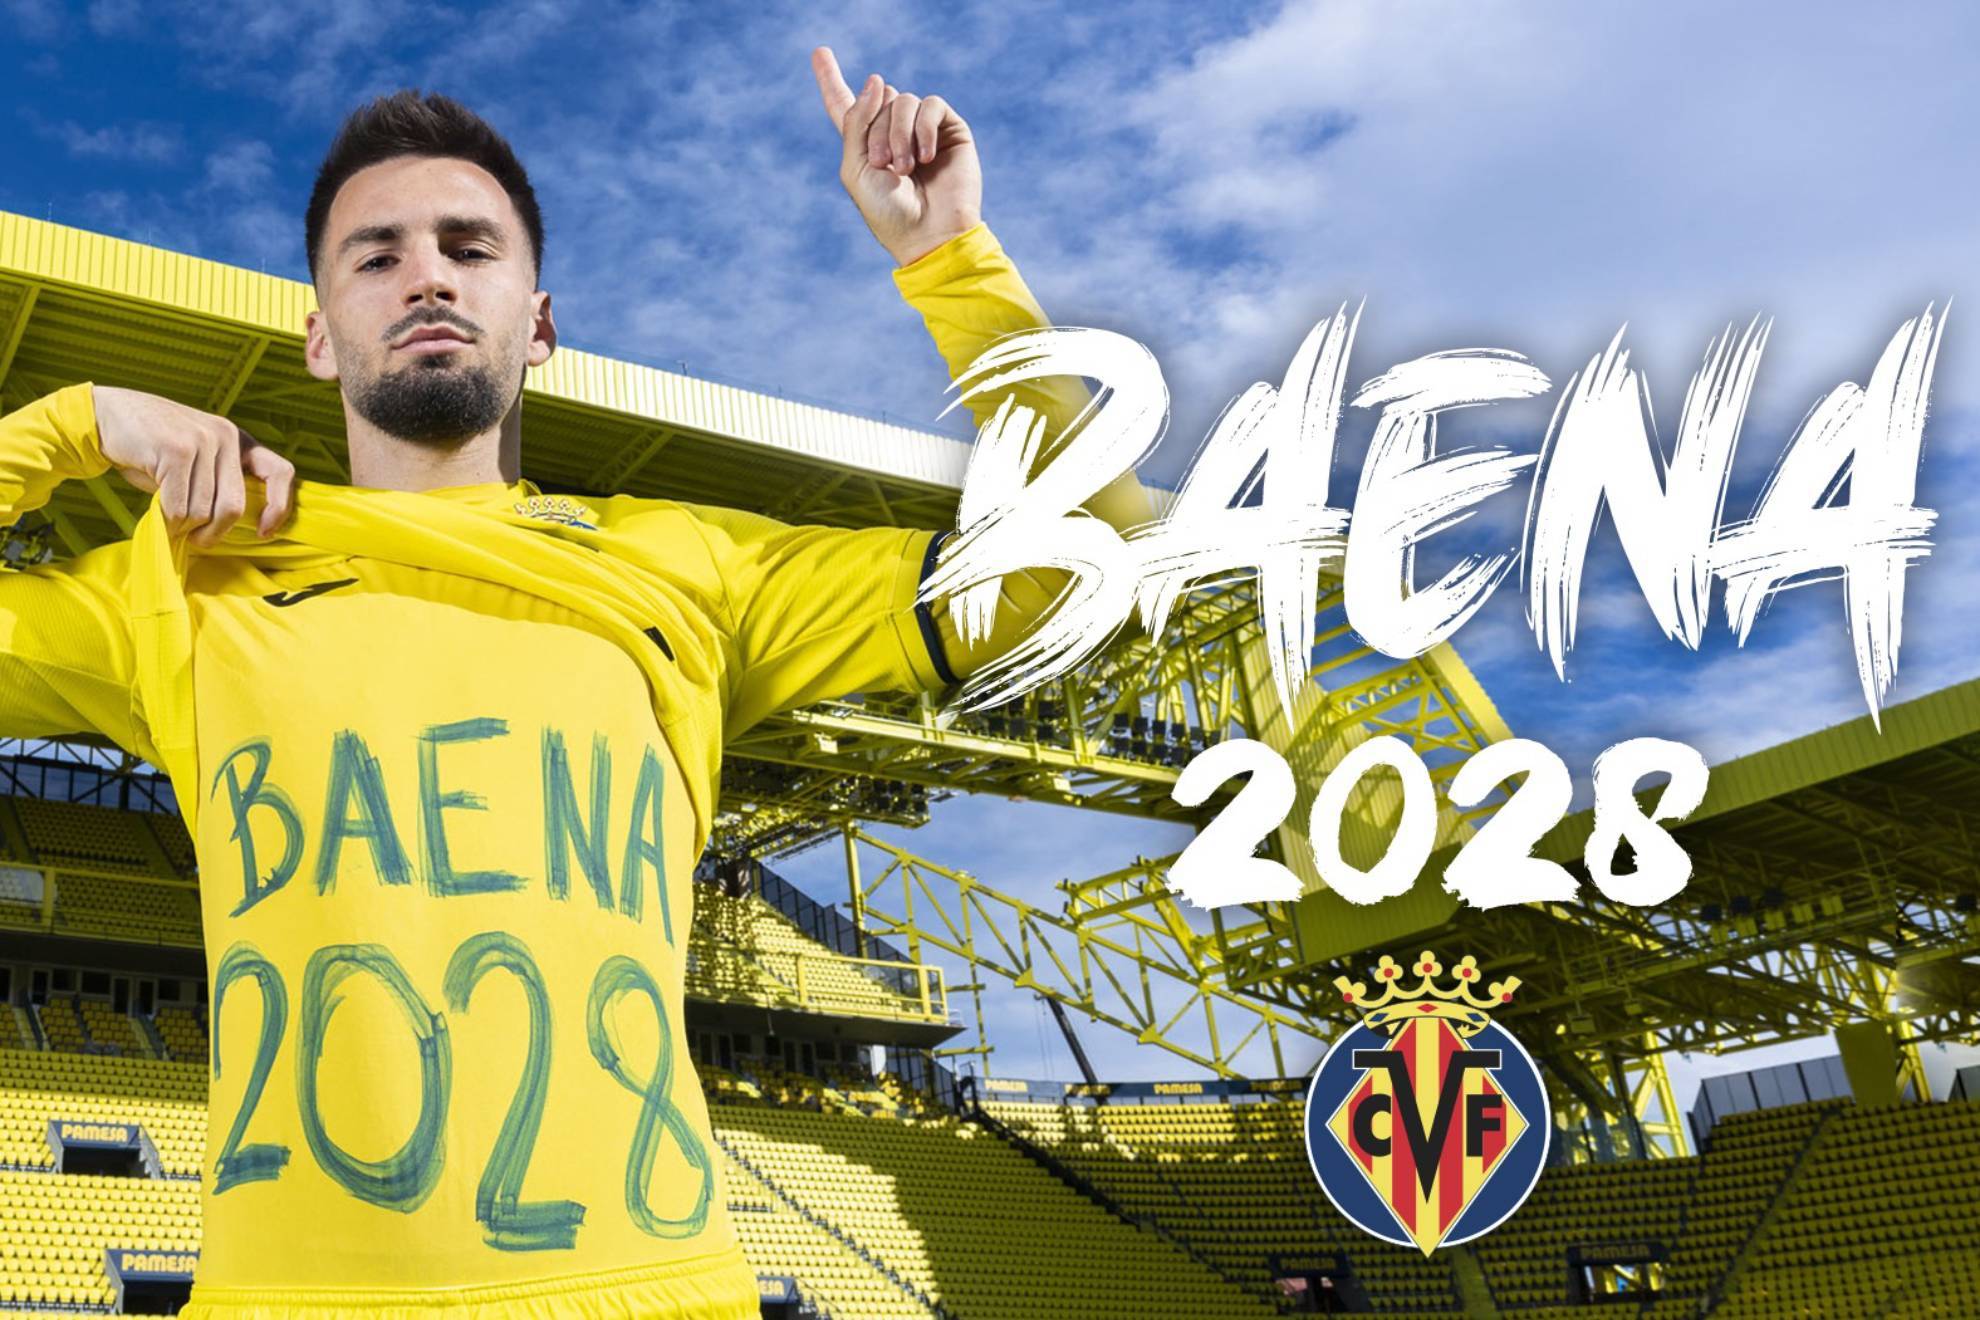 lex Baena renueva con el Villarreal hasta 2028 con un emotivo mensaje de recuerdo para Llaneza